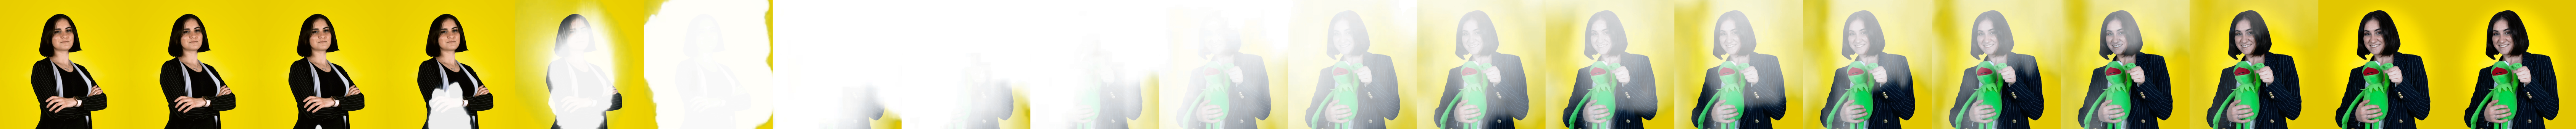 Mariangela e Kermit